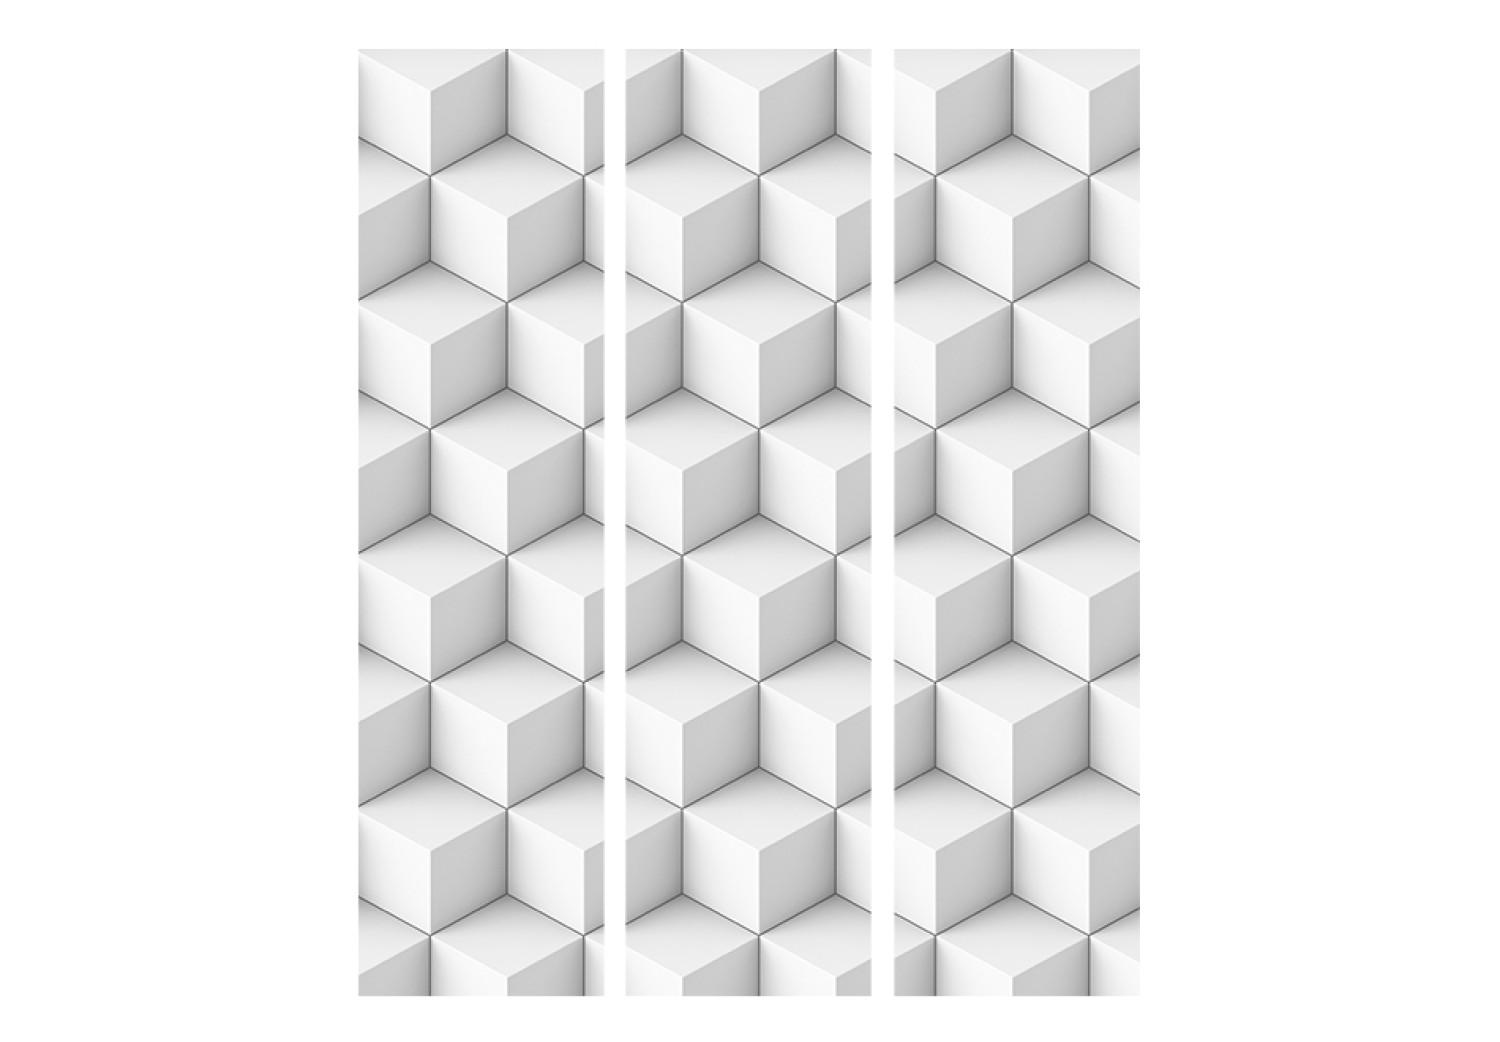 Biombo original Cubos blancos (3 partes) - abstracción geométrica en 3D